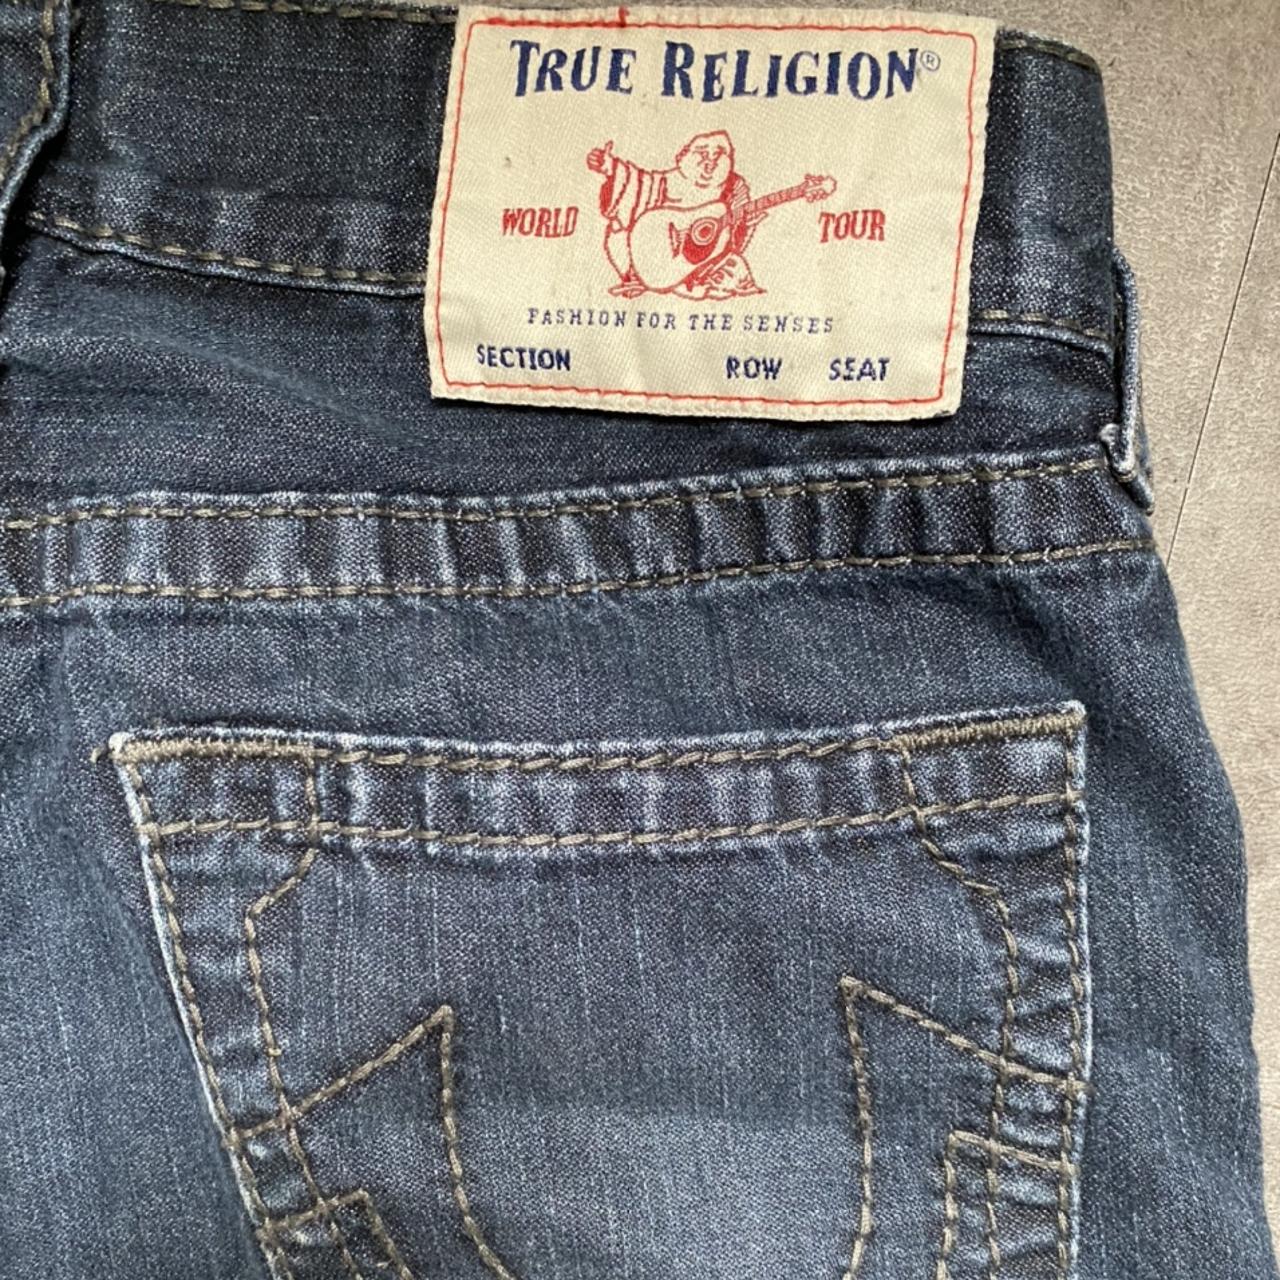 True religion trousers - Depop